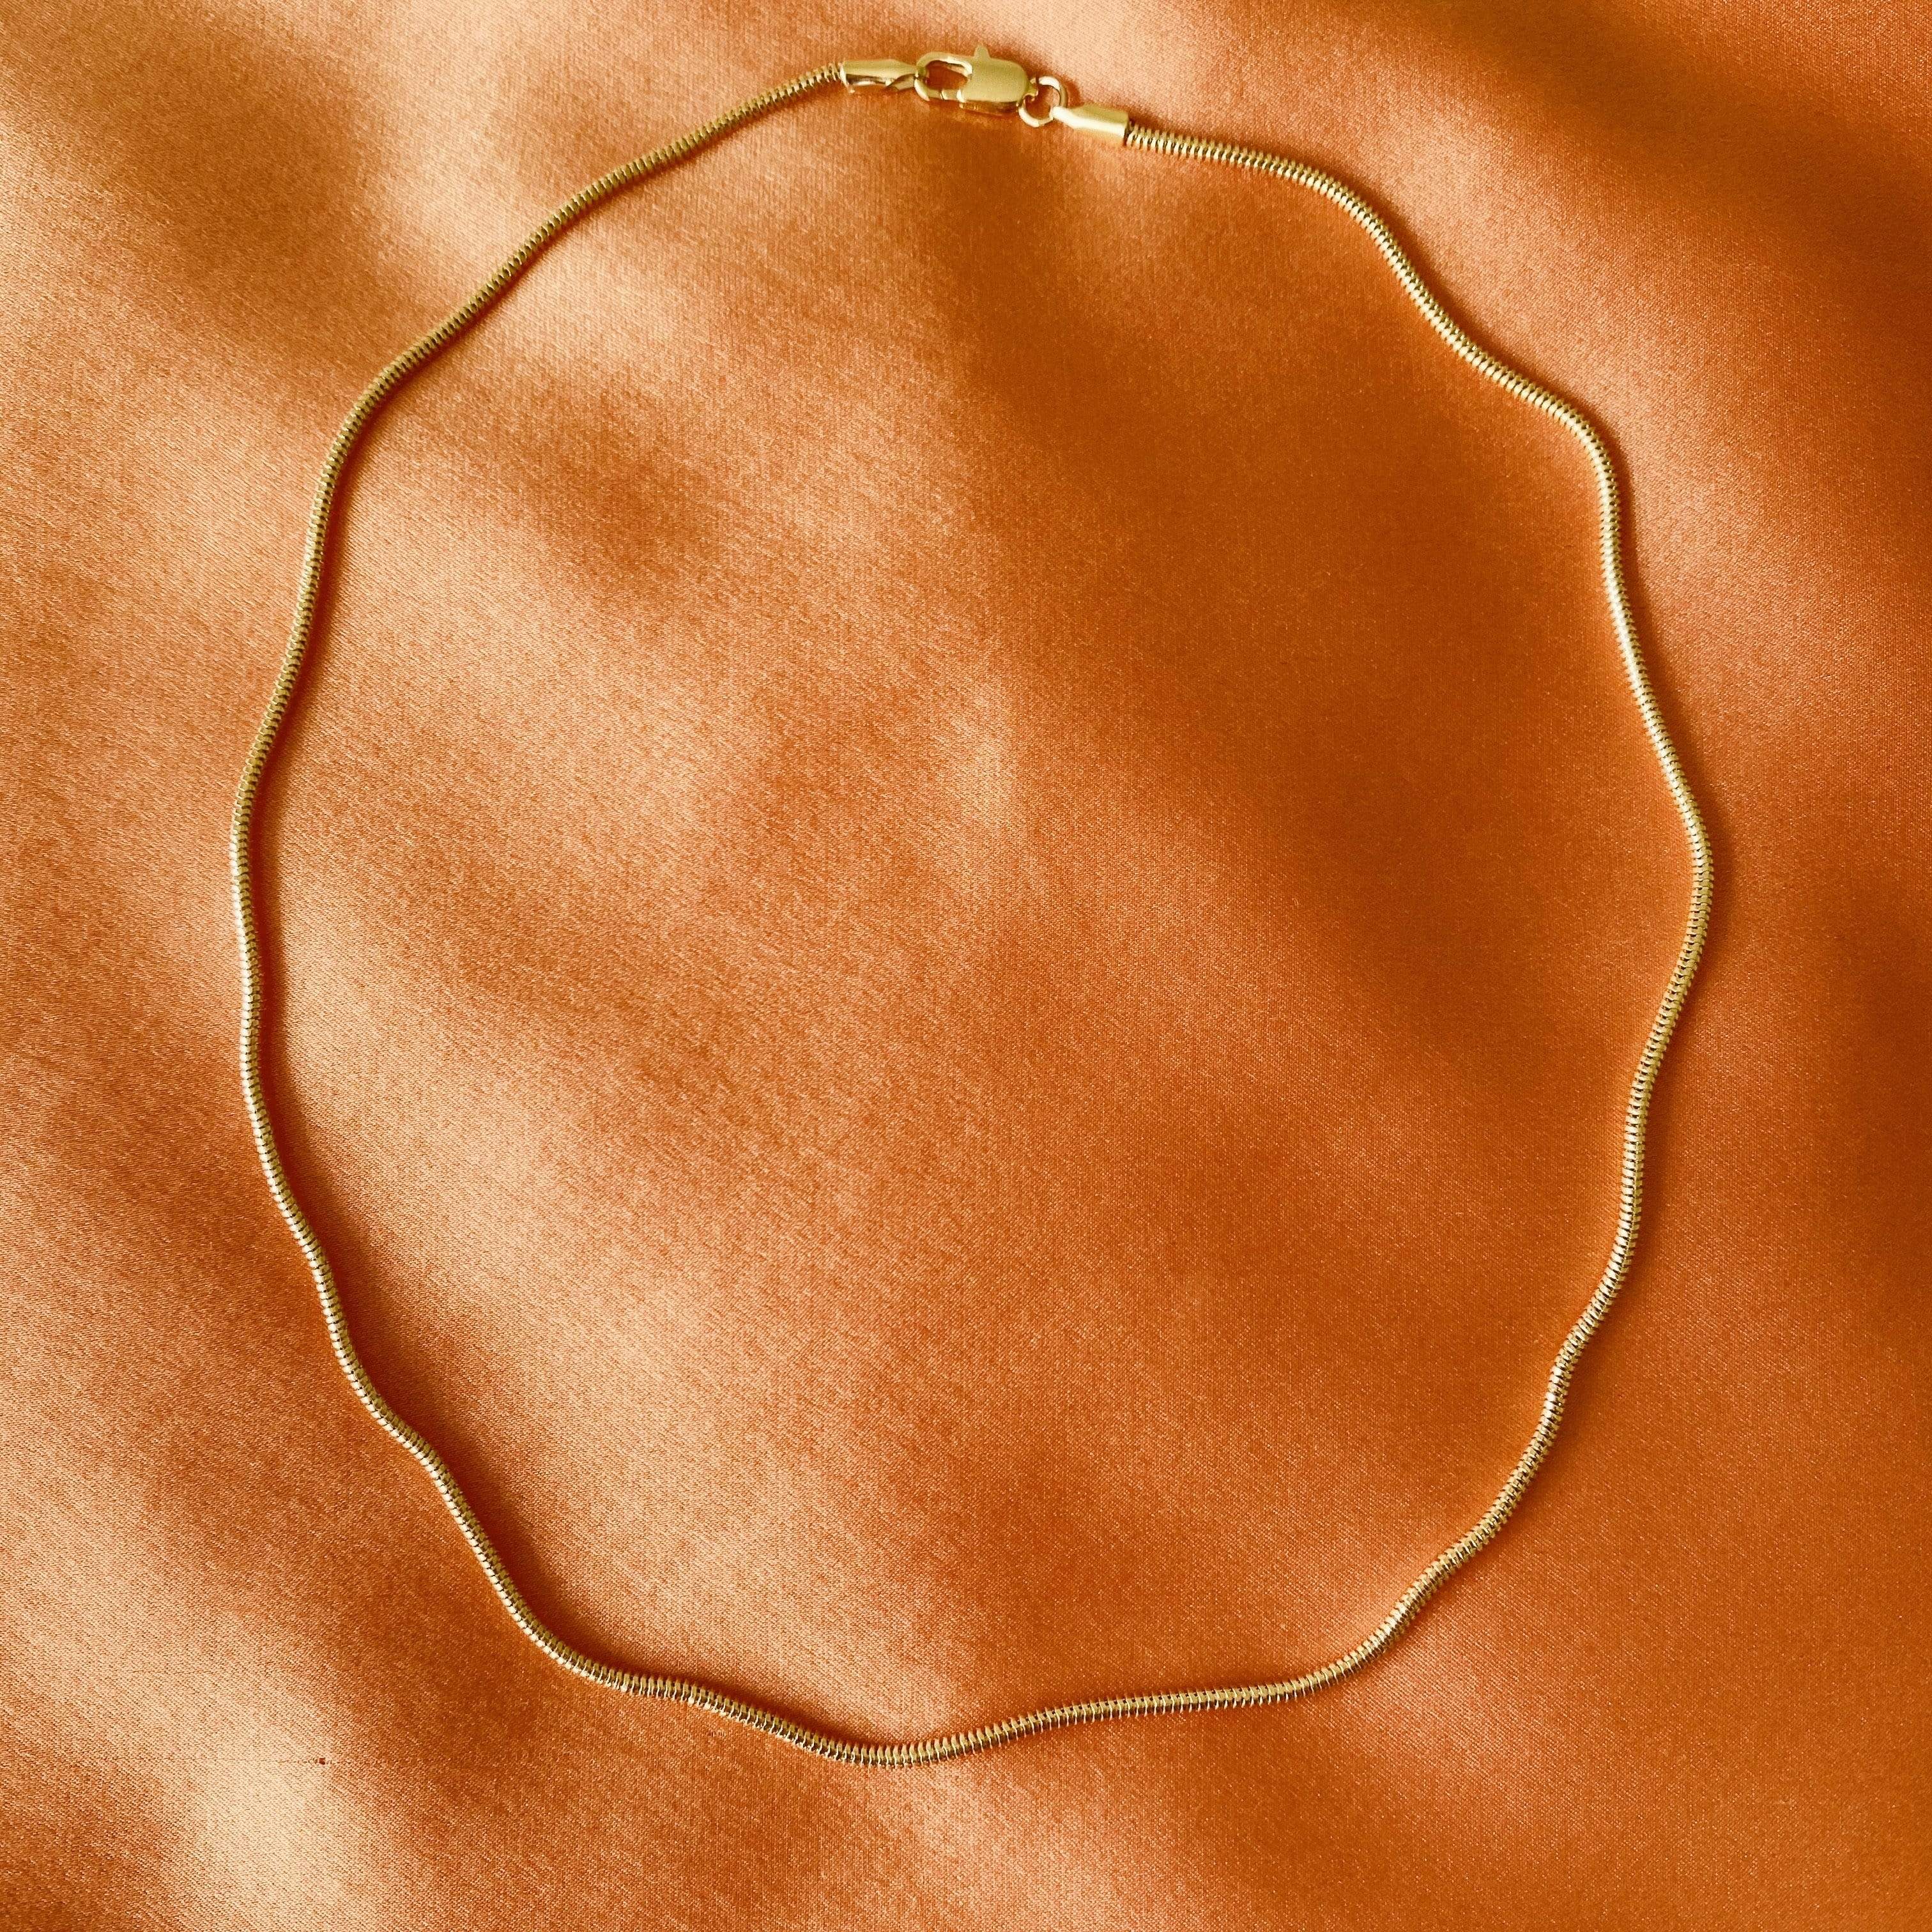 LE sensor necklace Lily Chain Necklace 16”